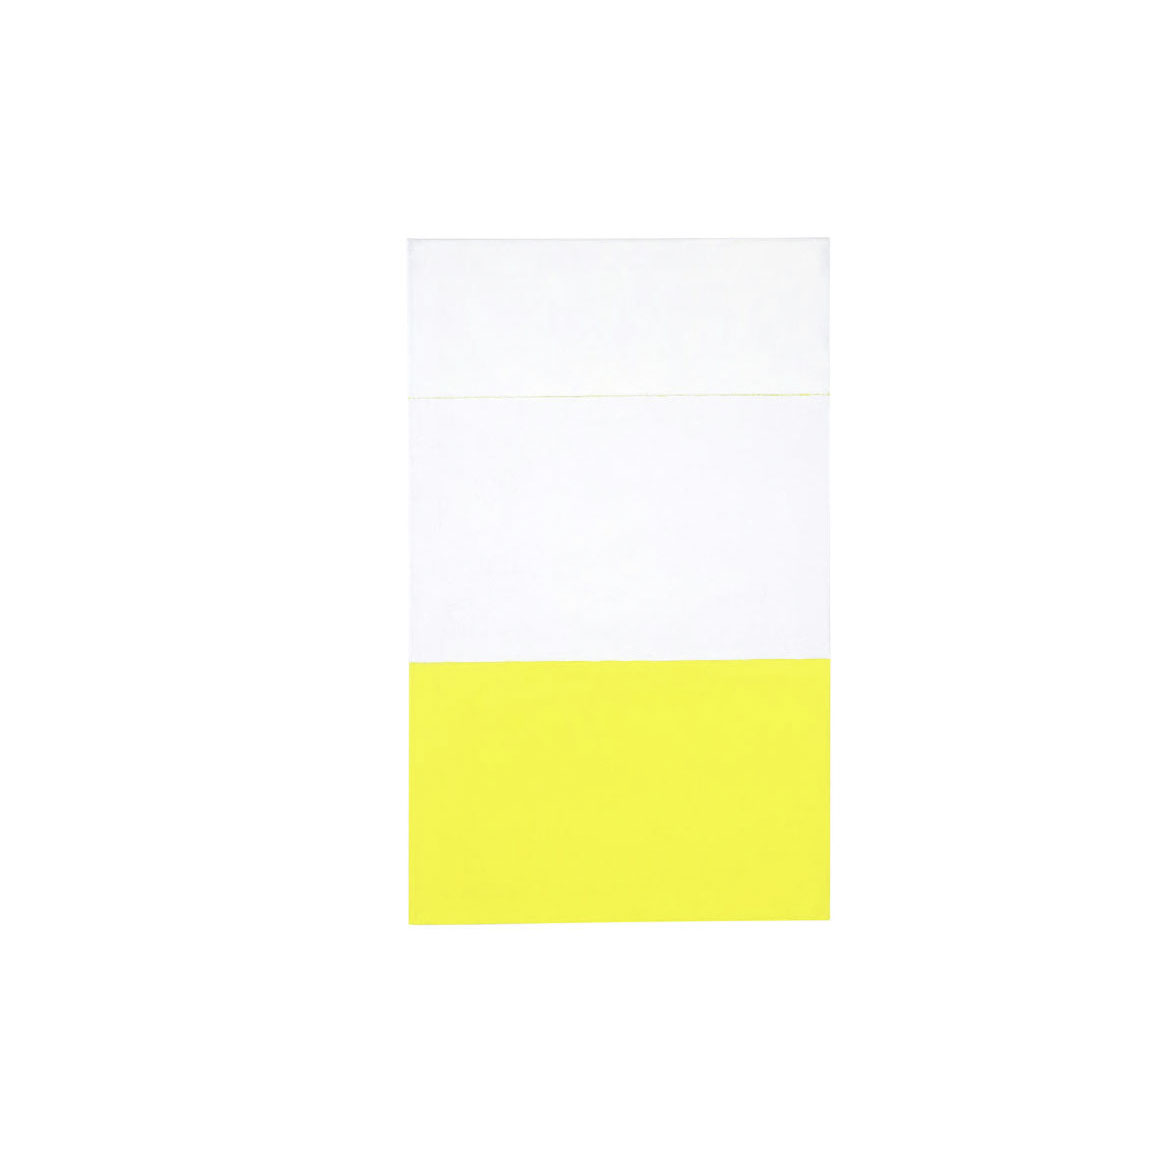 erna-weiss_malerei_painting_yellow_oel-und-wachs-auf-Segeltuch